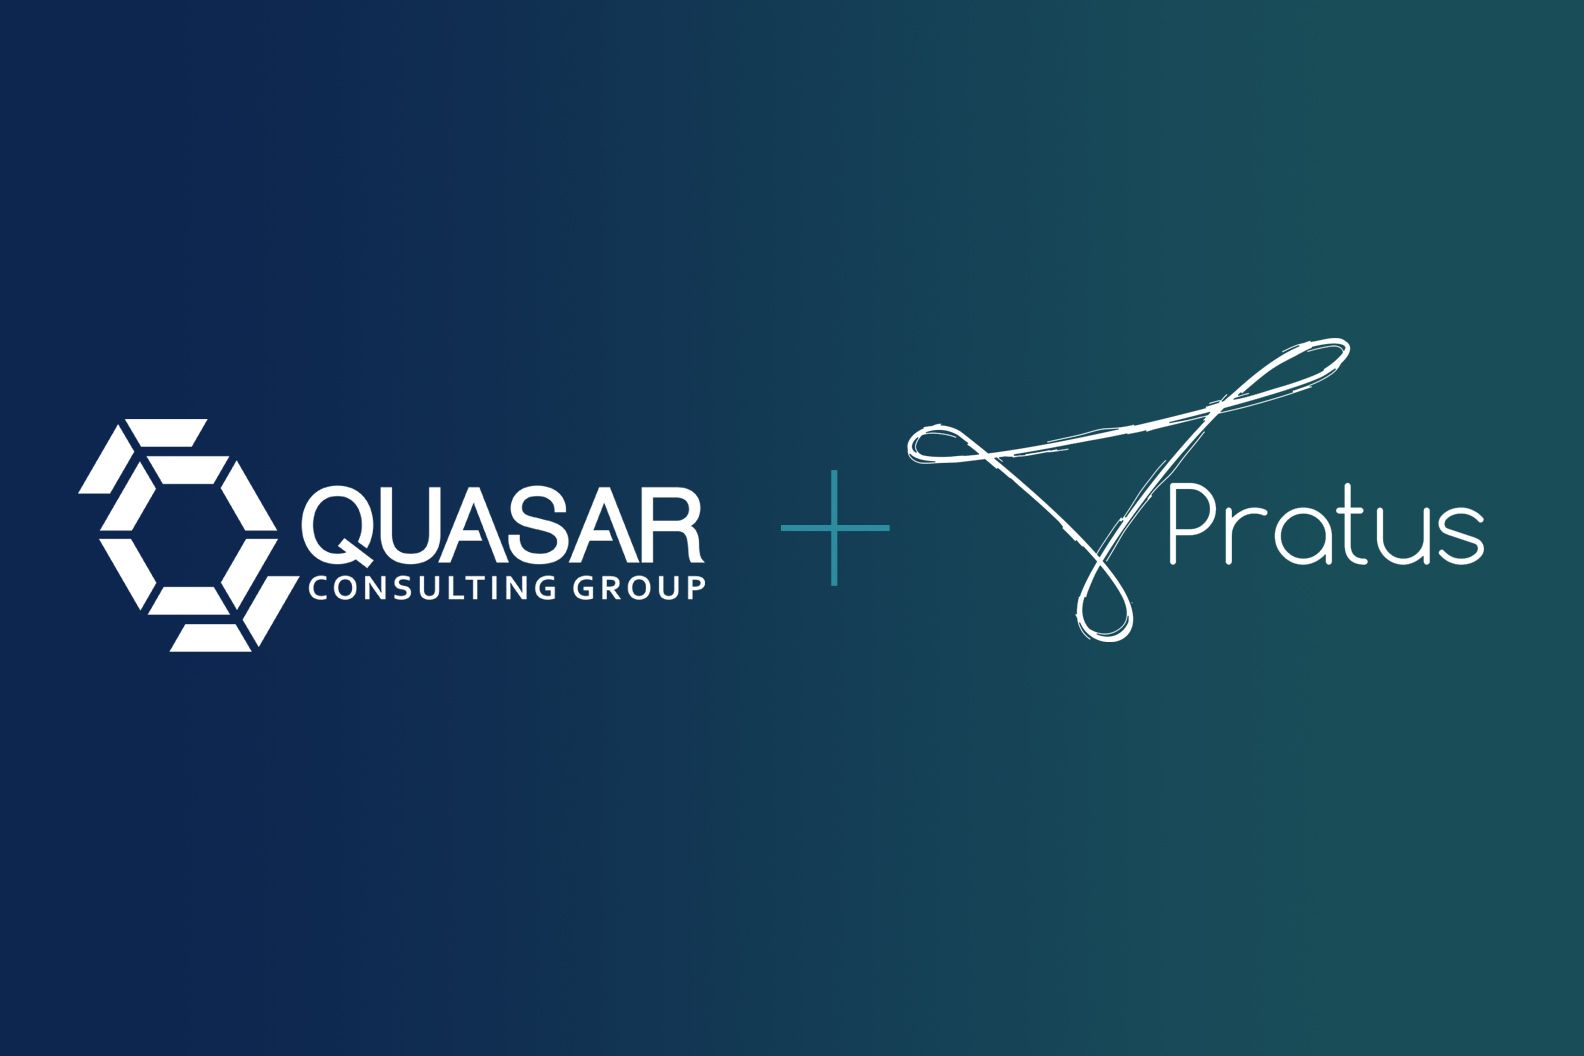 Quasar and Pratus